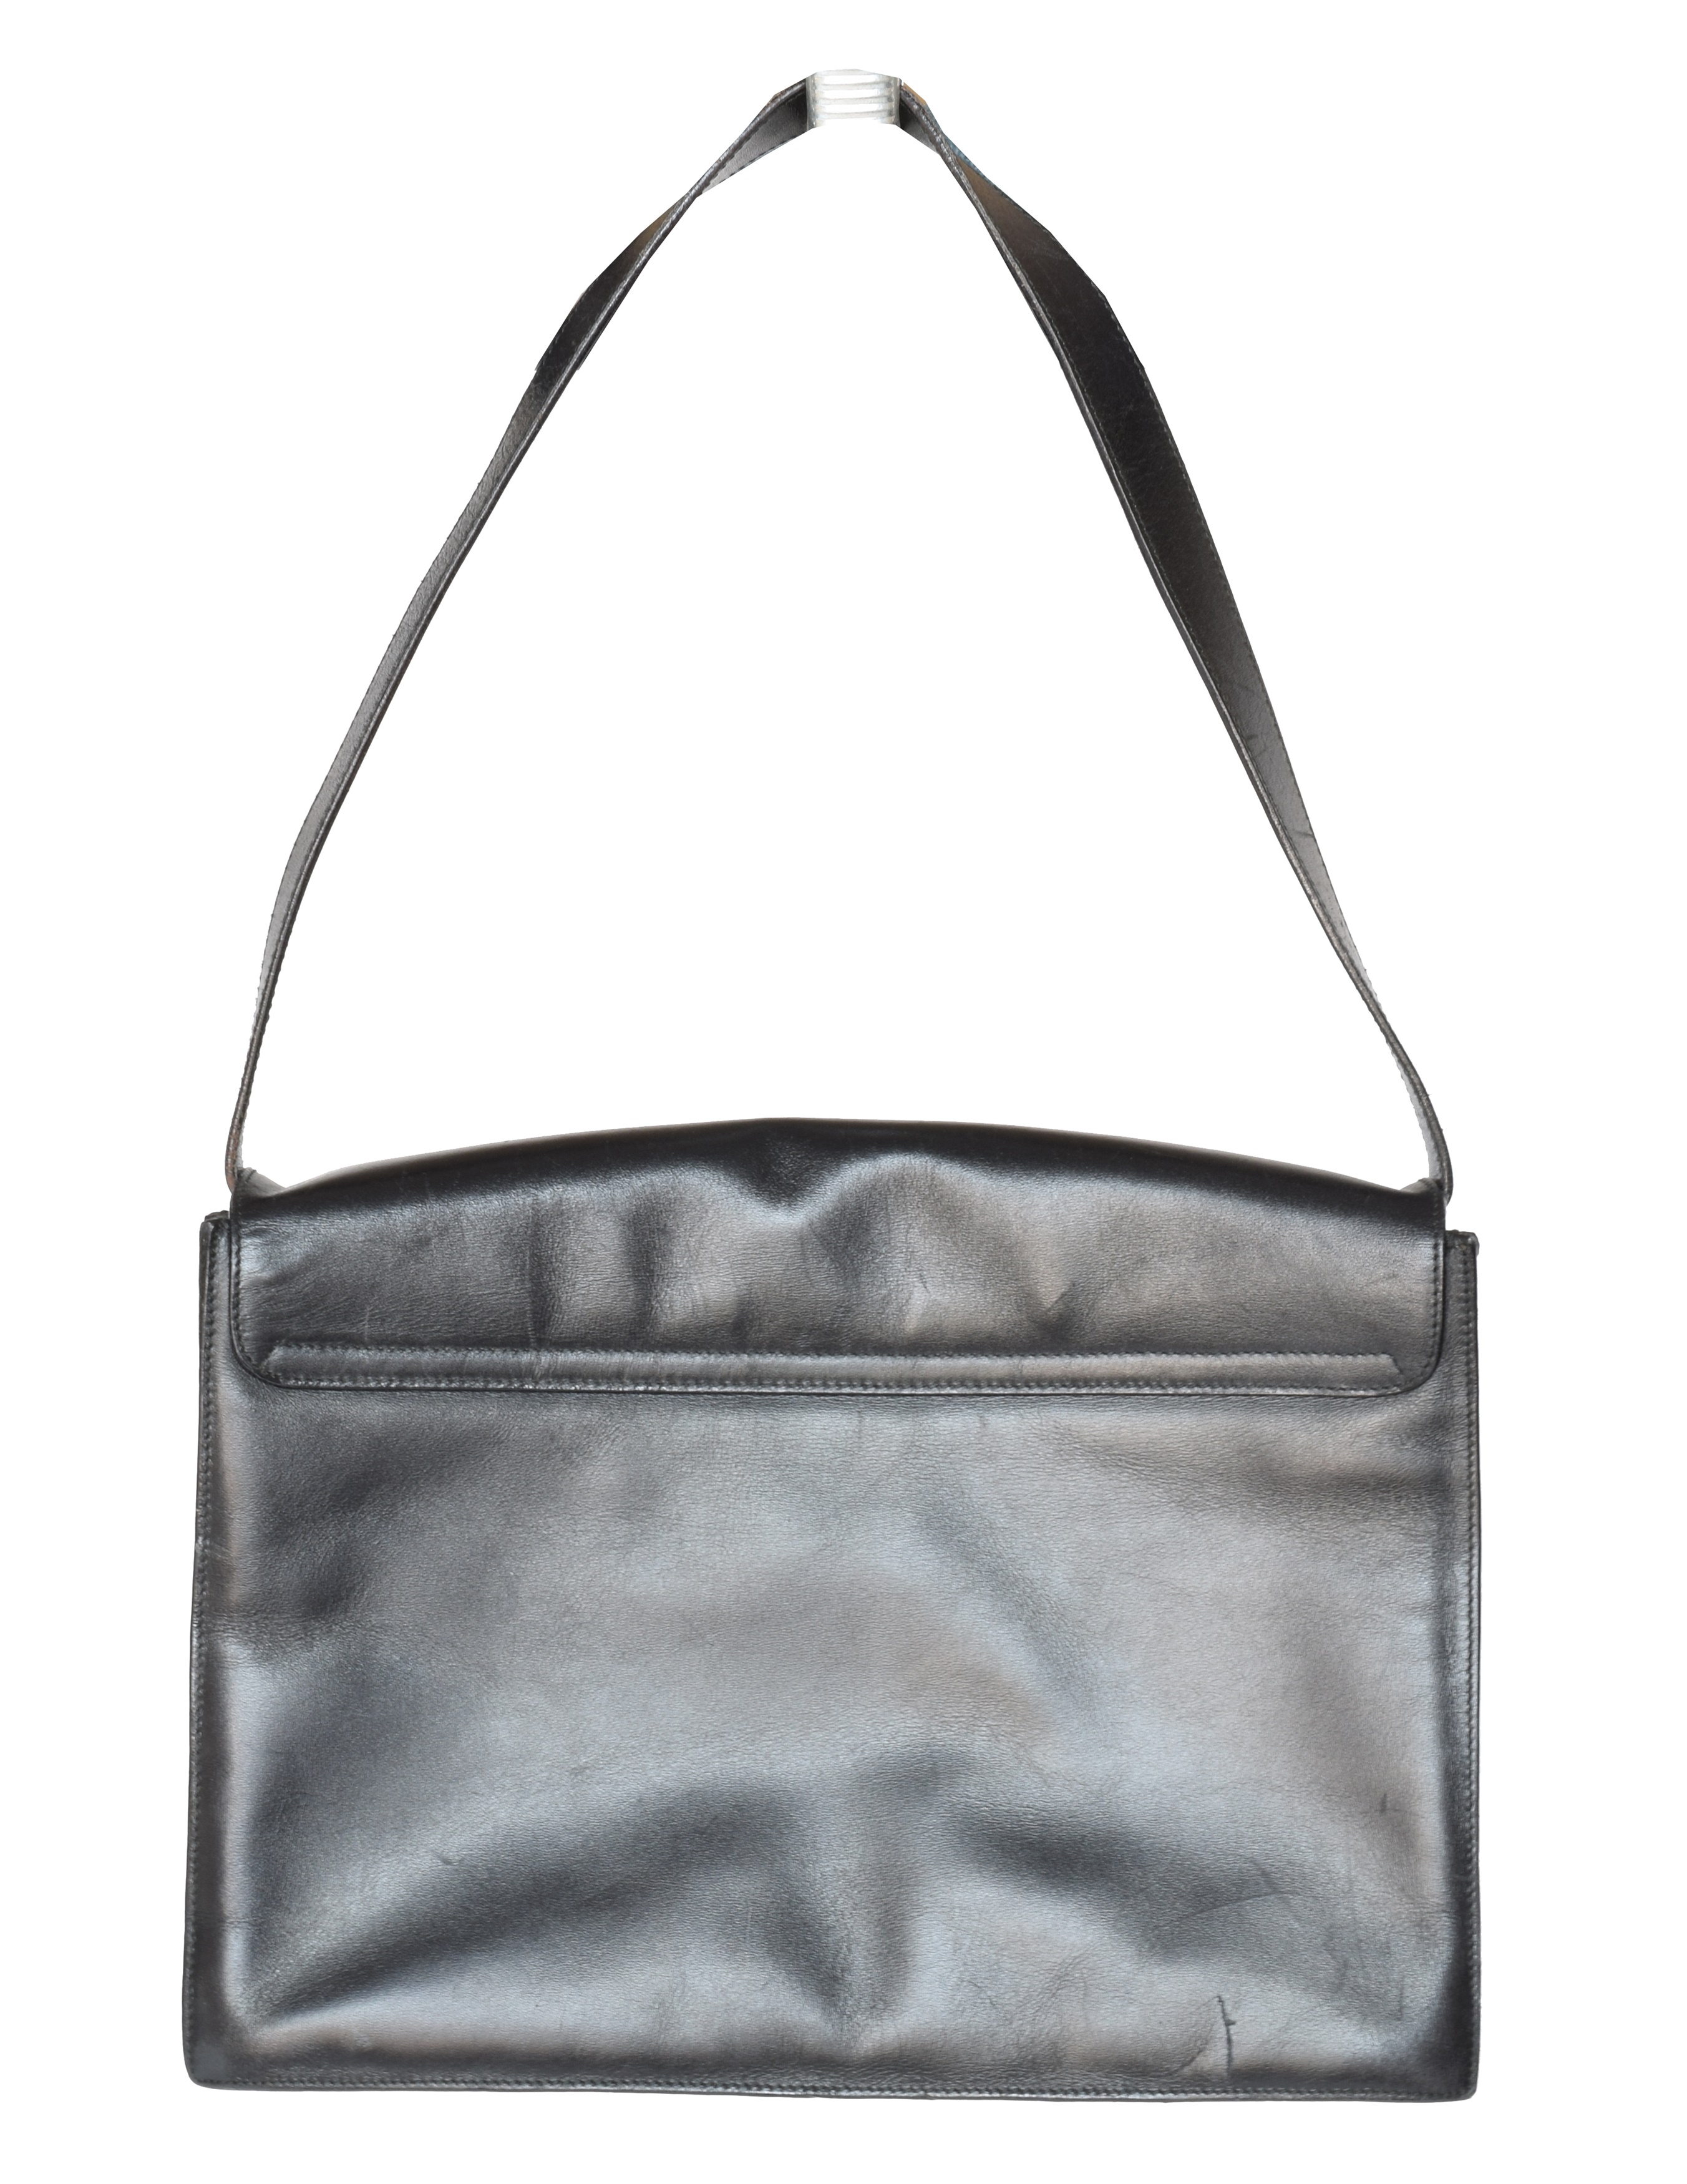 A Gucci vintage shoulder bag, - Image 2 of 2